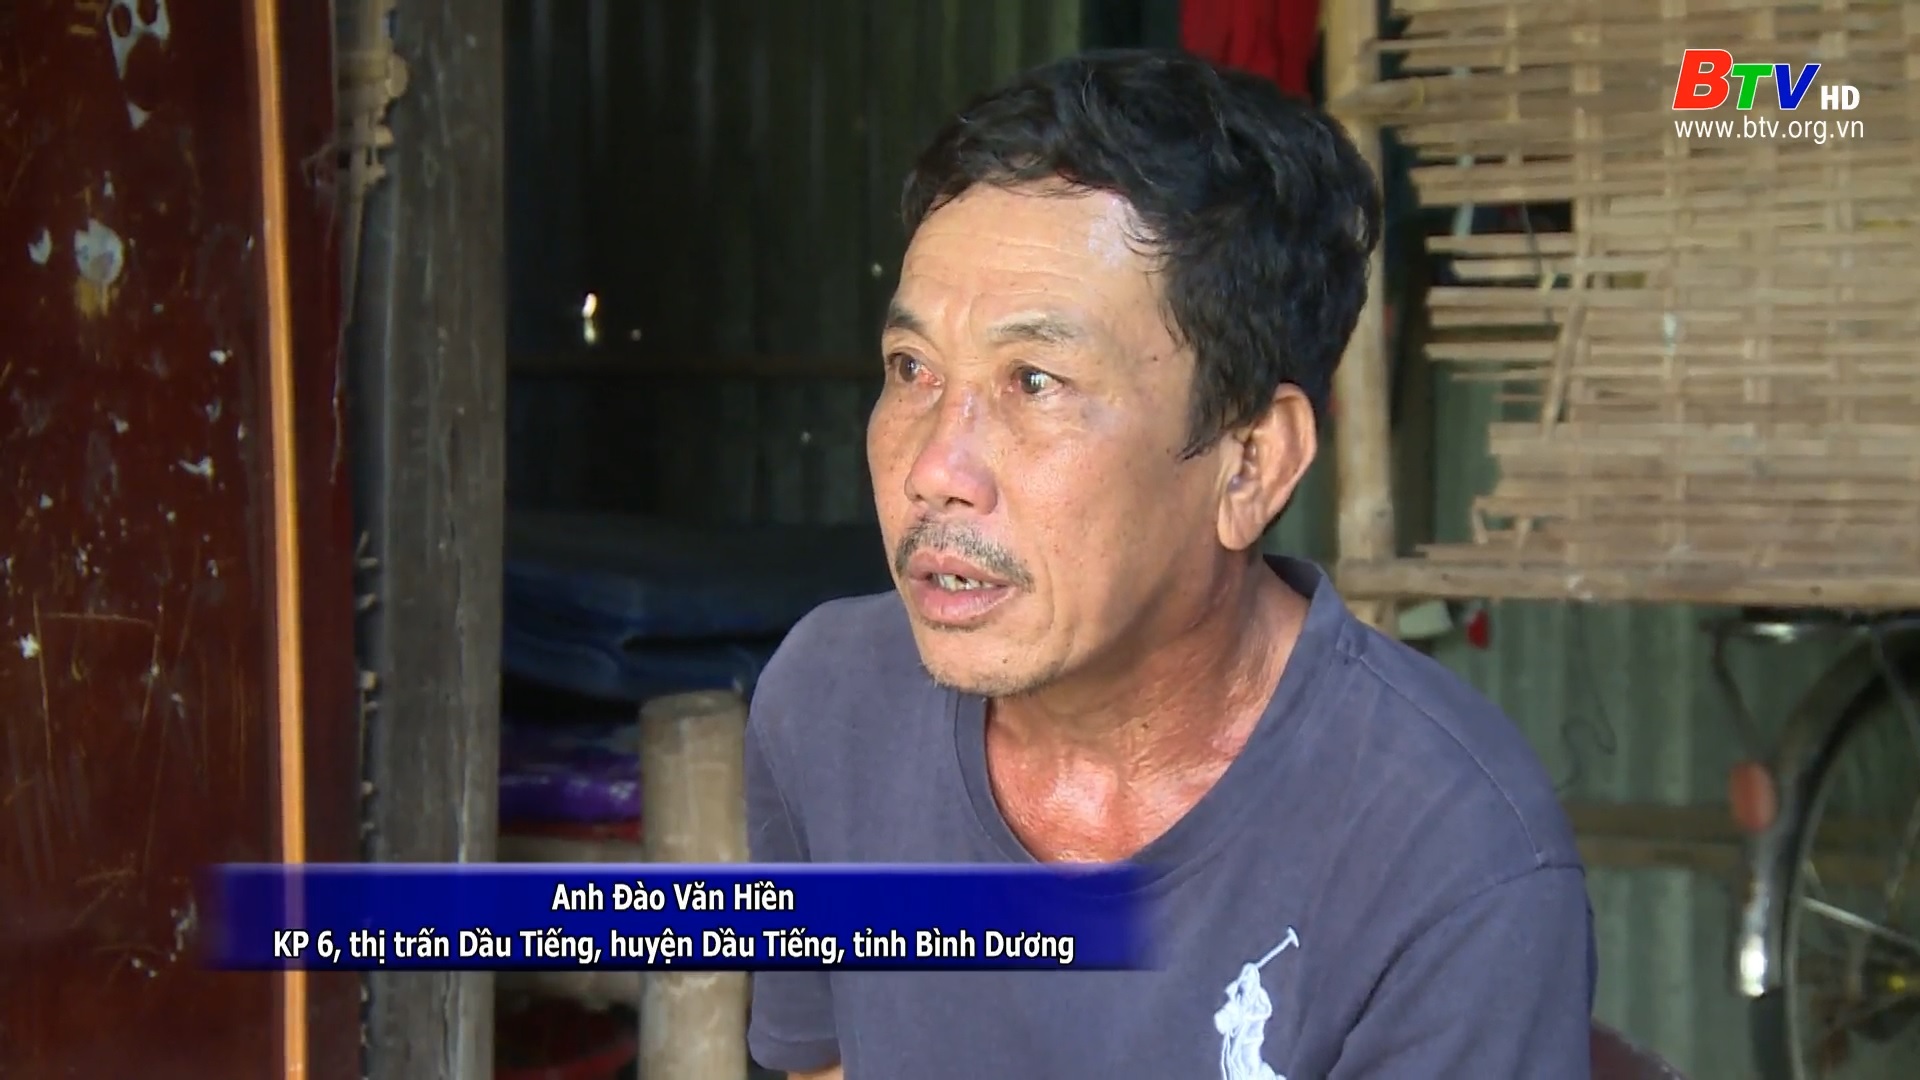 Hoàn cảnh gia đình anh Đào Văn Hiền, thị trấn Dầu Tiếng, huyện Dầu Tiếng - tỉnh Bình Dương